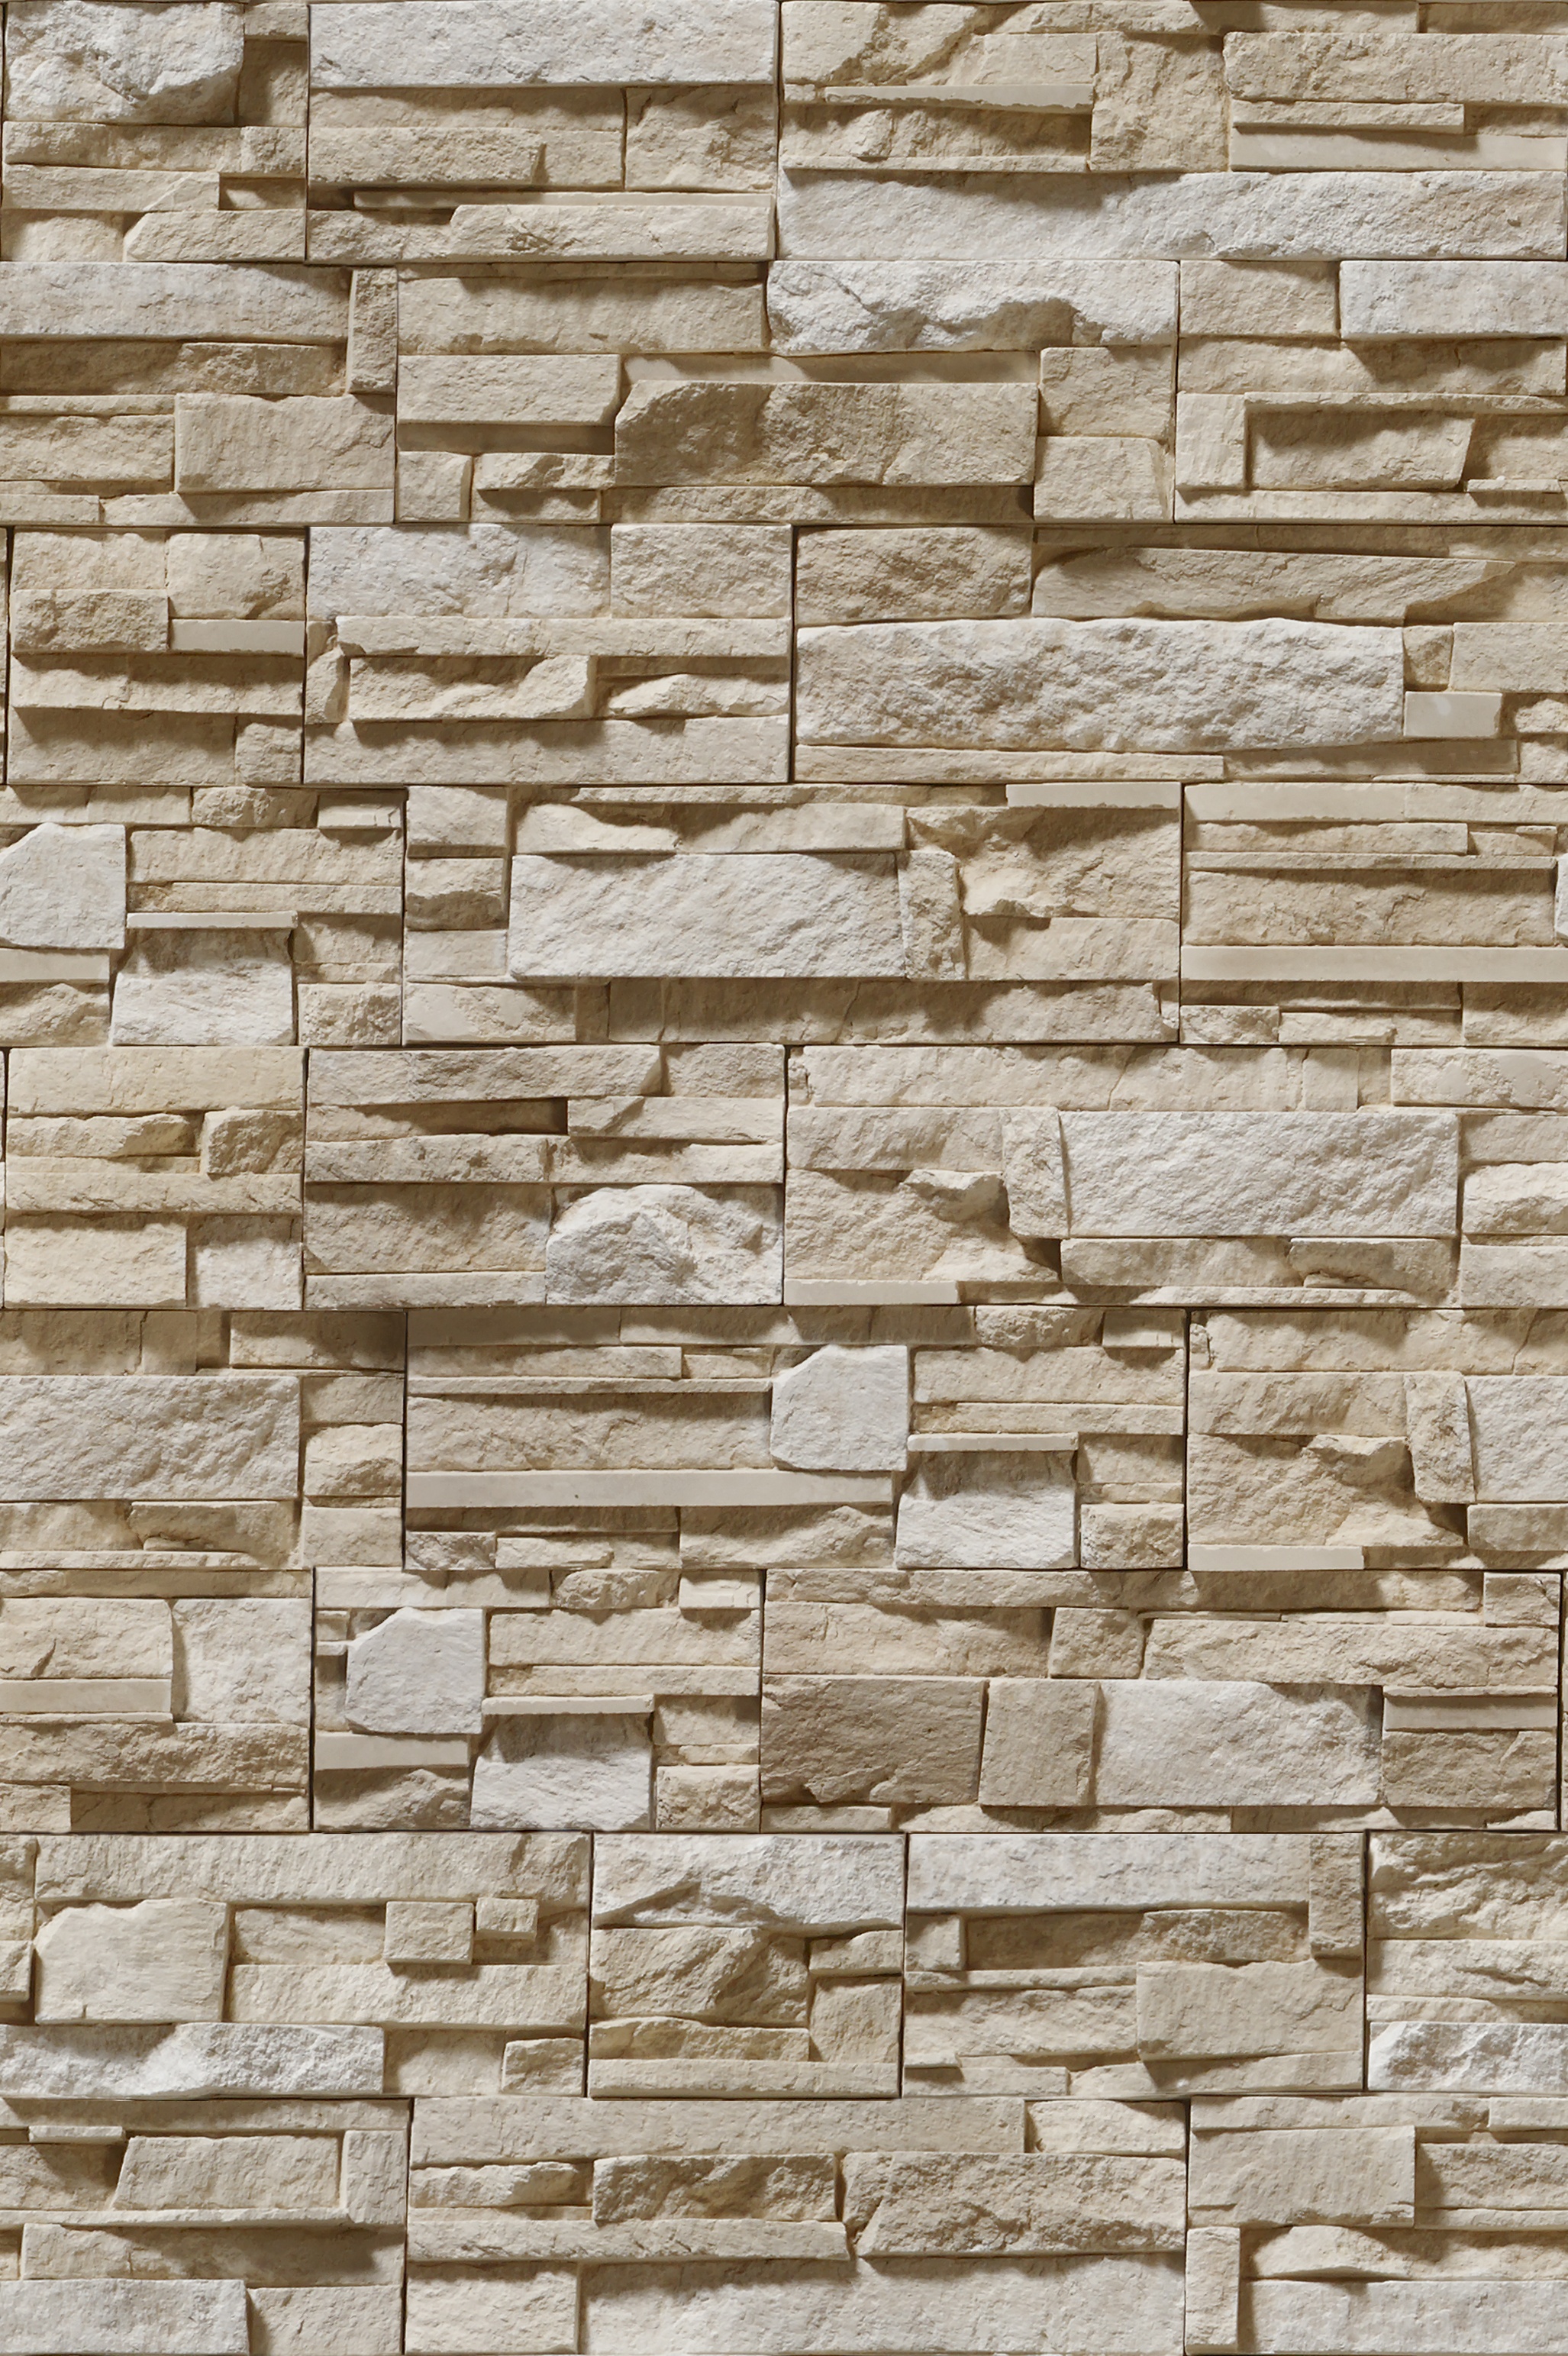 дикий камень, стена, текстура камня, каменная стенка, скачать фон, stone background